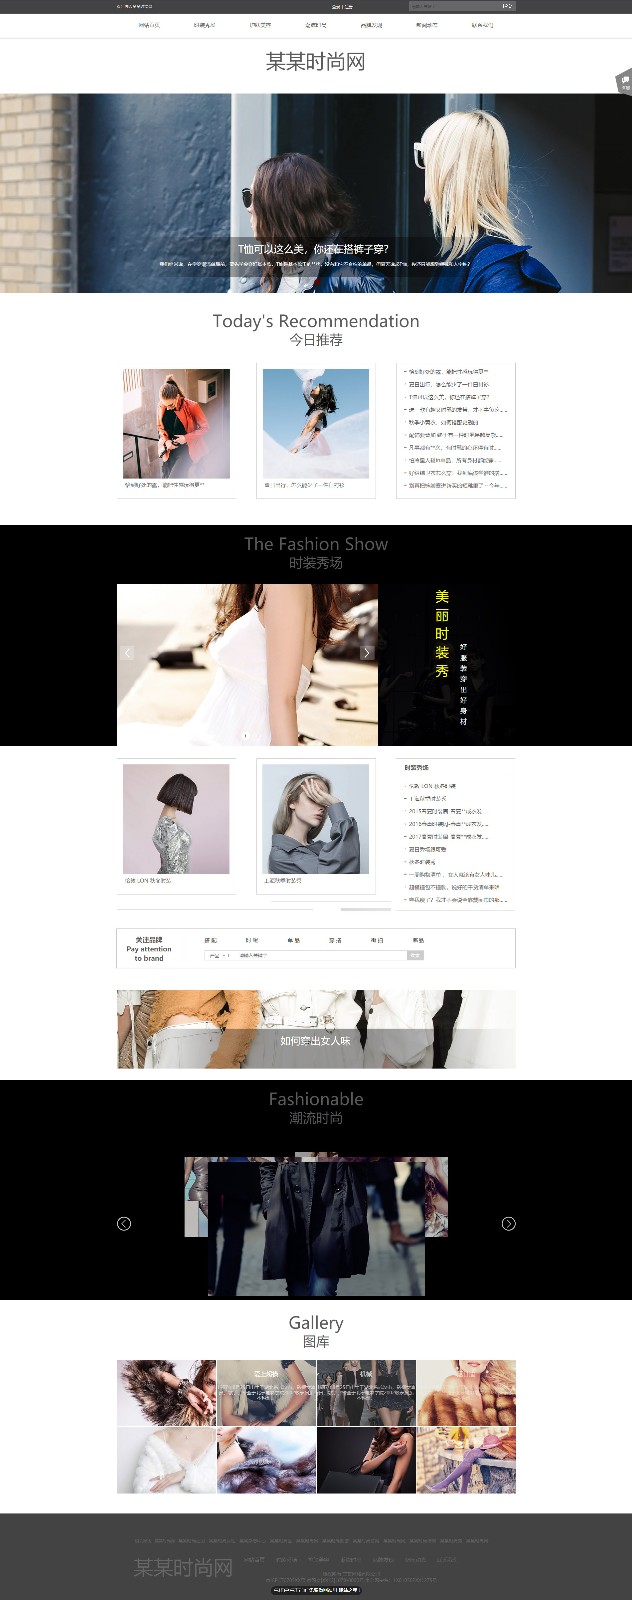 流行、时尚网站模板-fashion-1016084